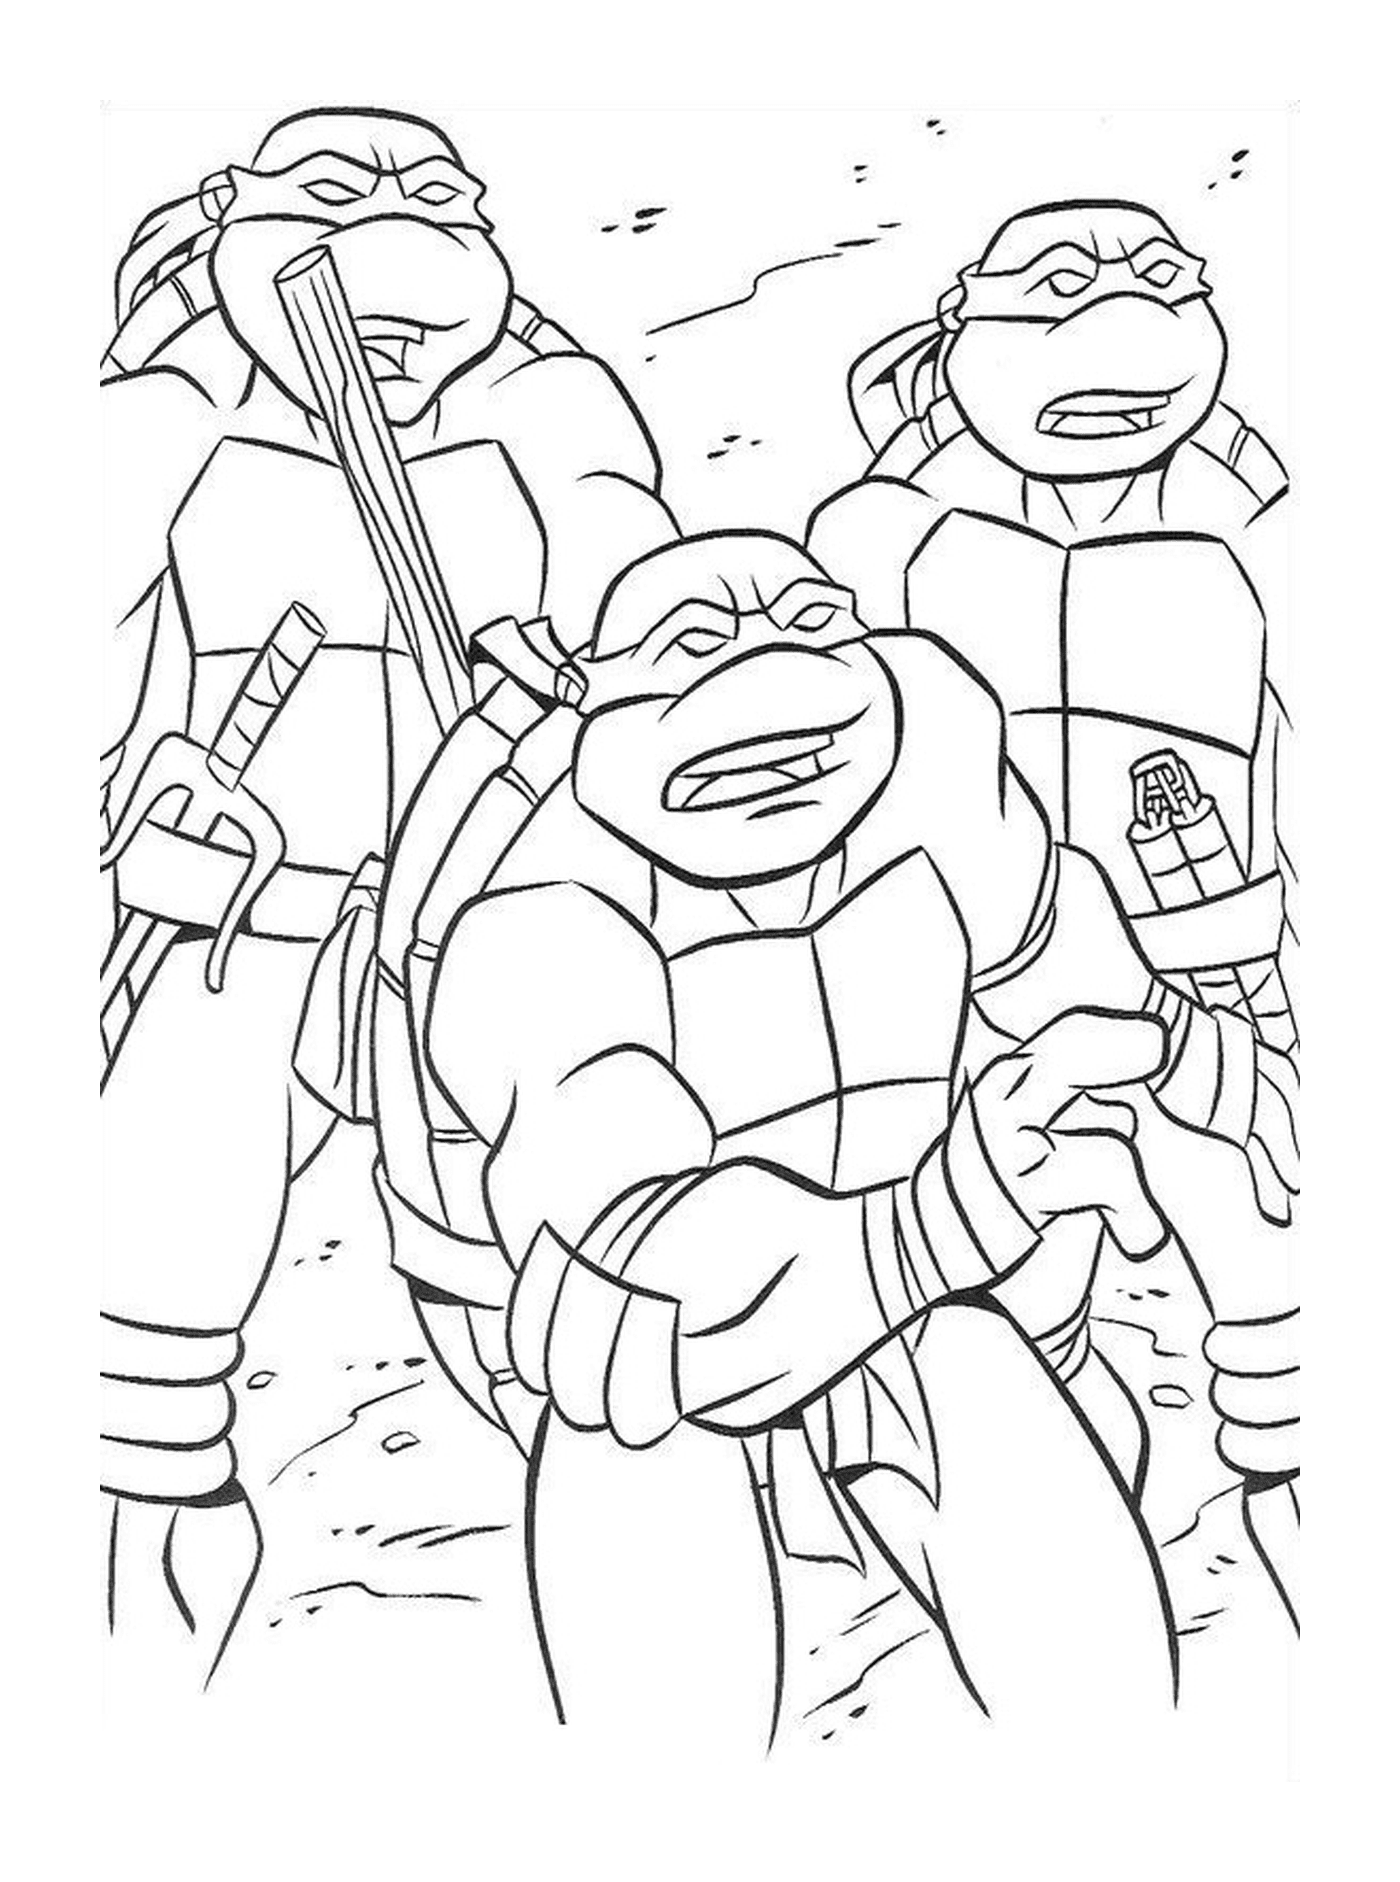  Grupo de tortugas ninjas solidarias 